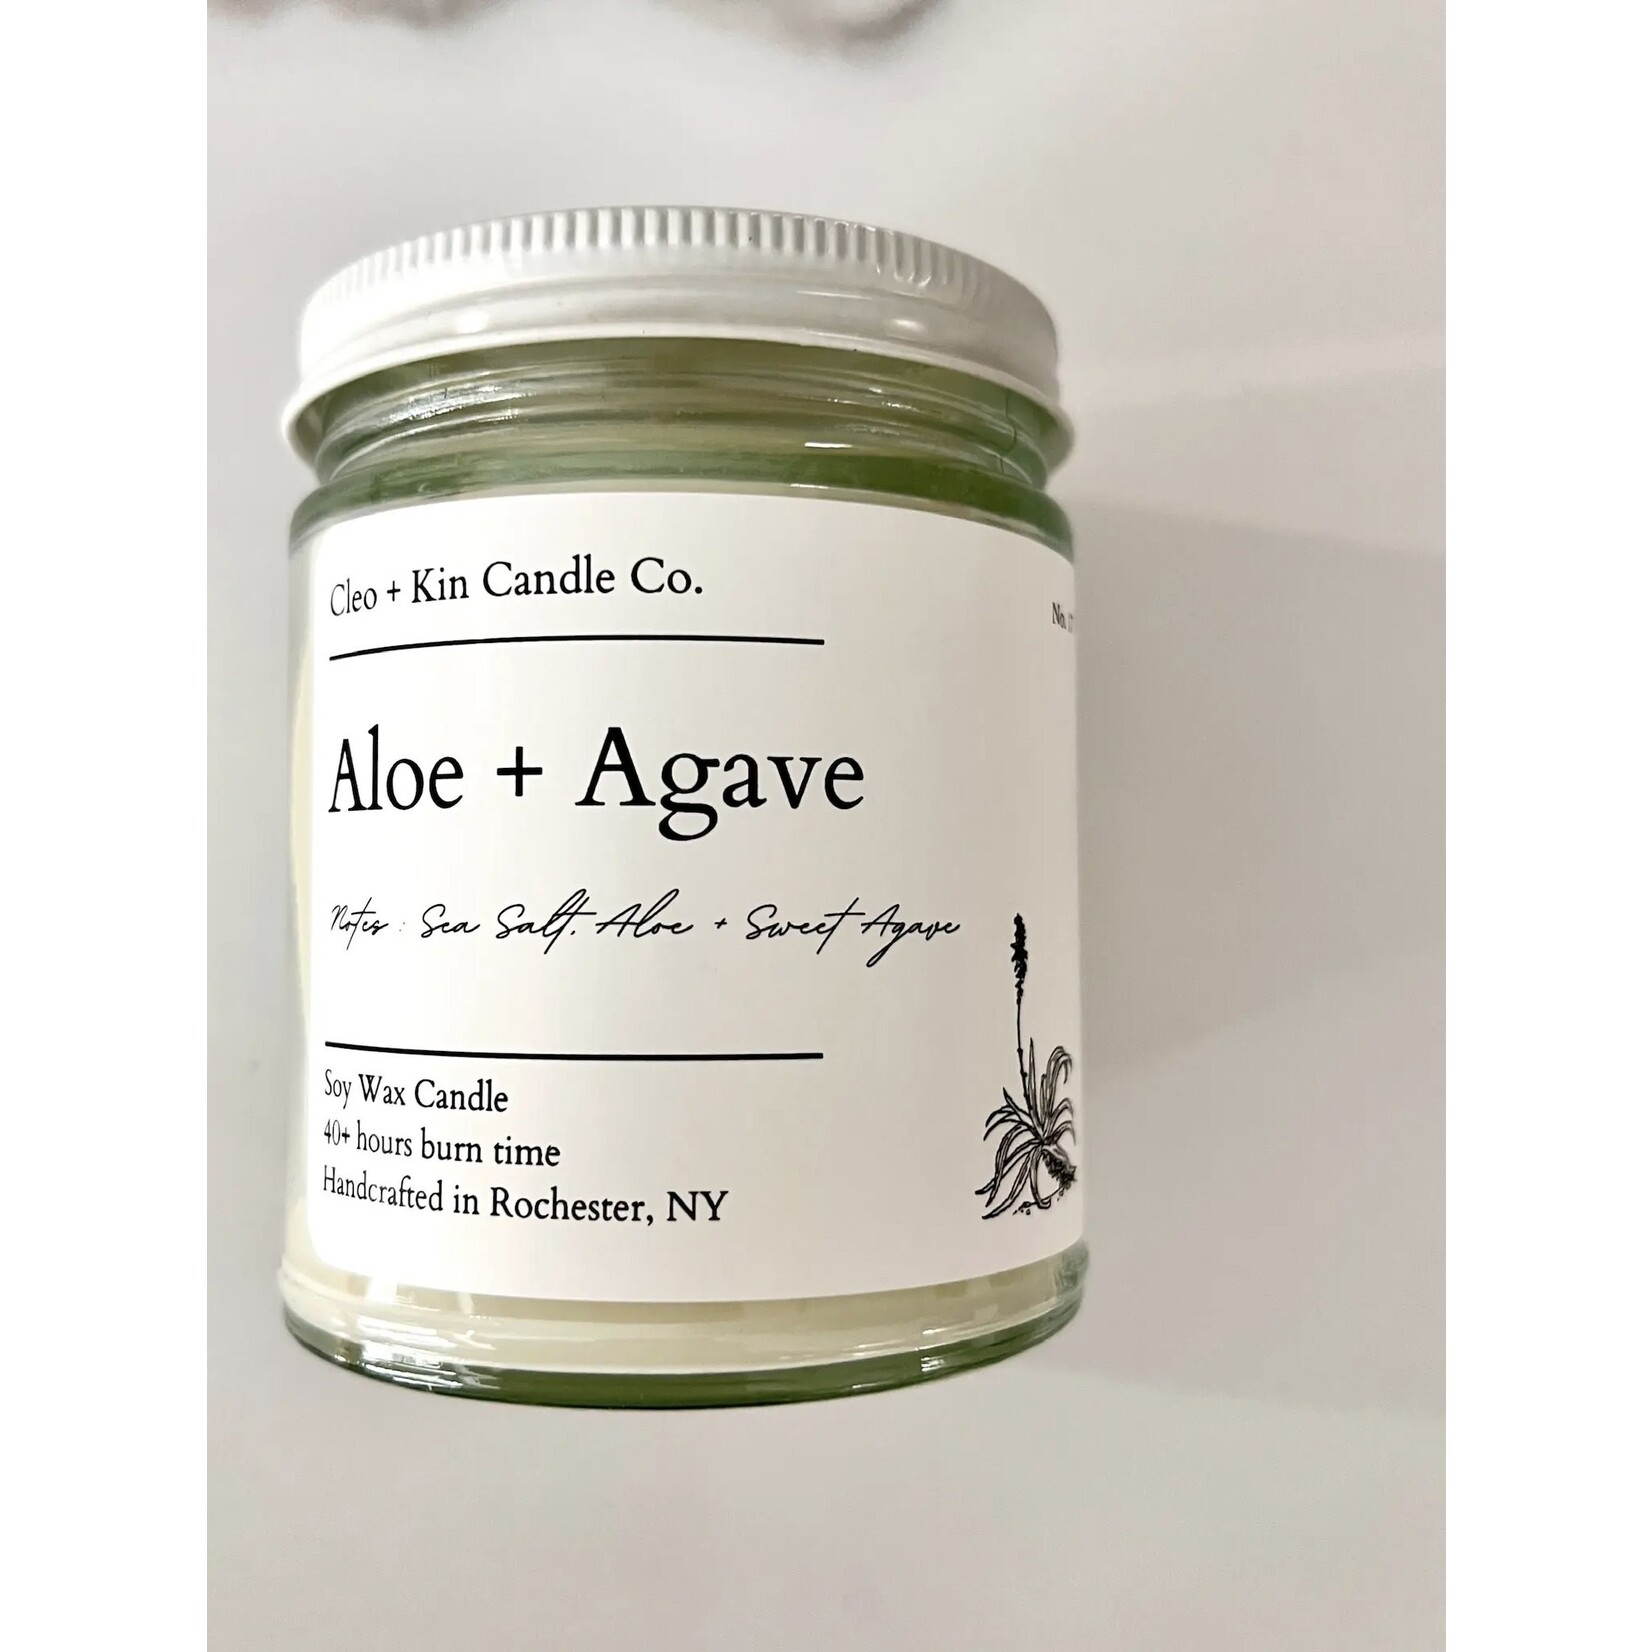 Cleo + Kin Candle Co. Cleo + Kin Candle Aloe + Agave